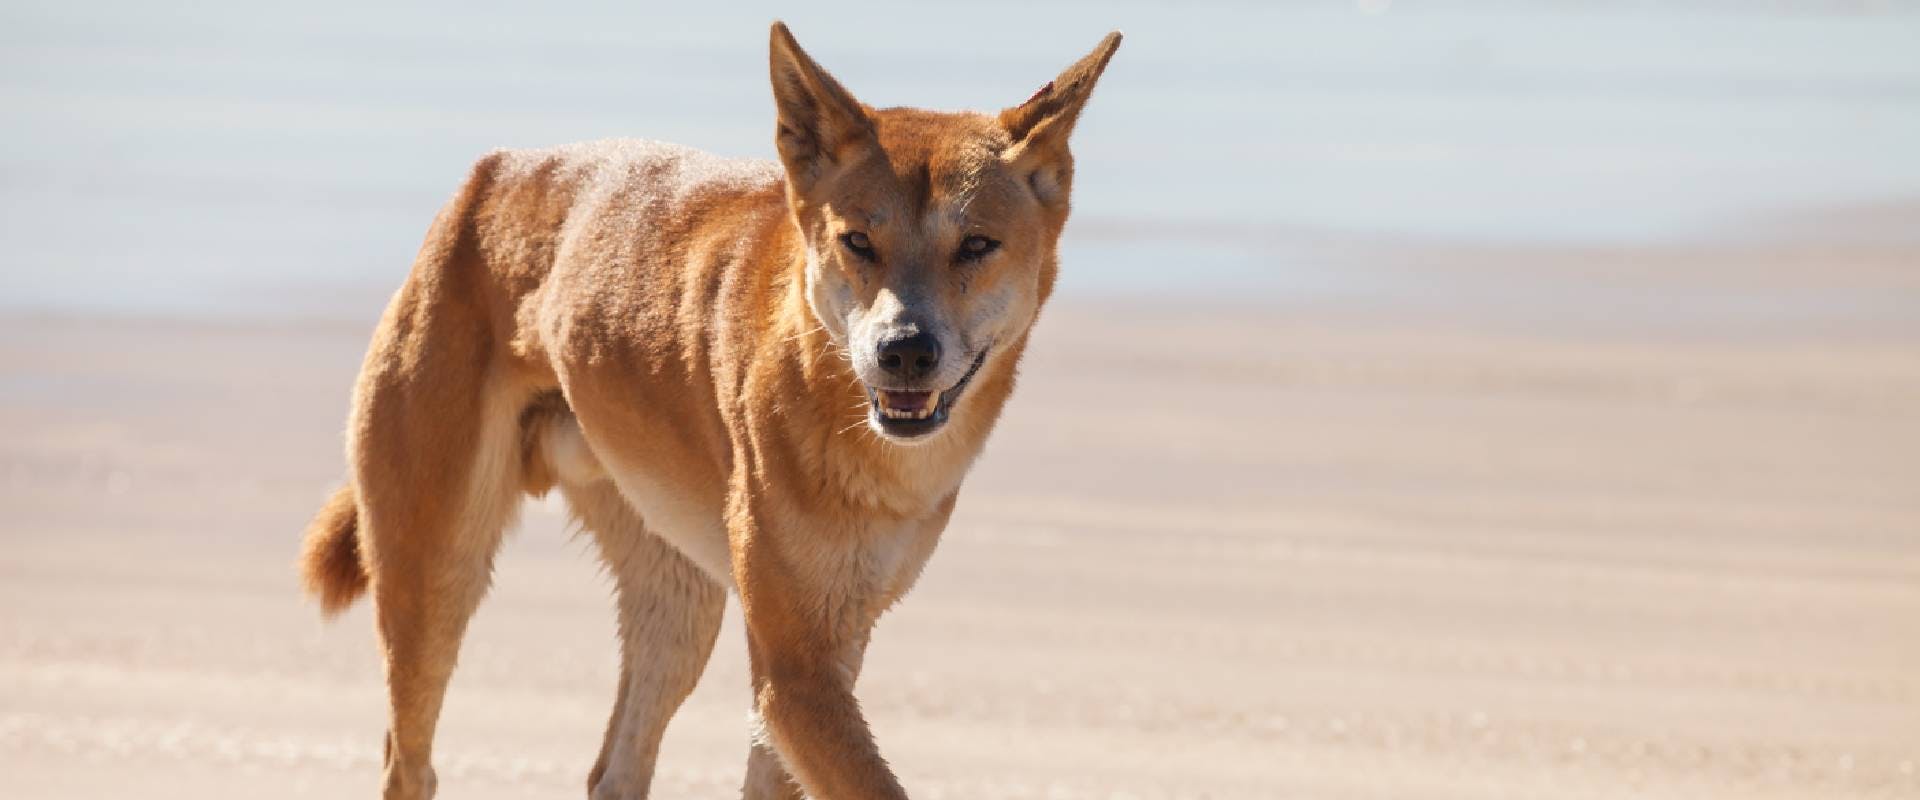 Dingo on a beach